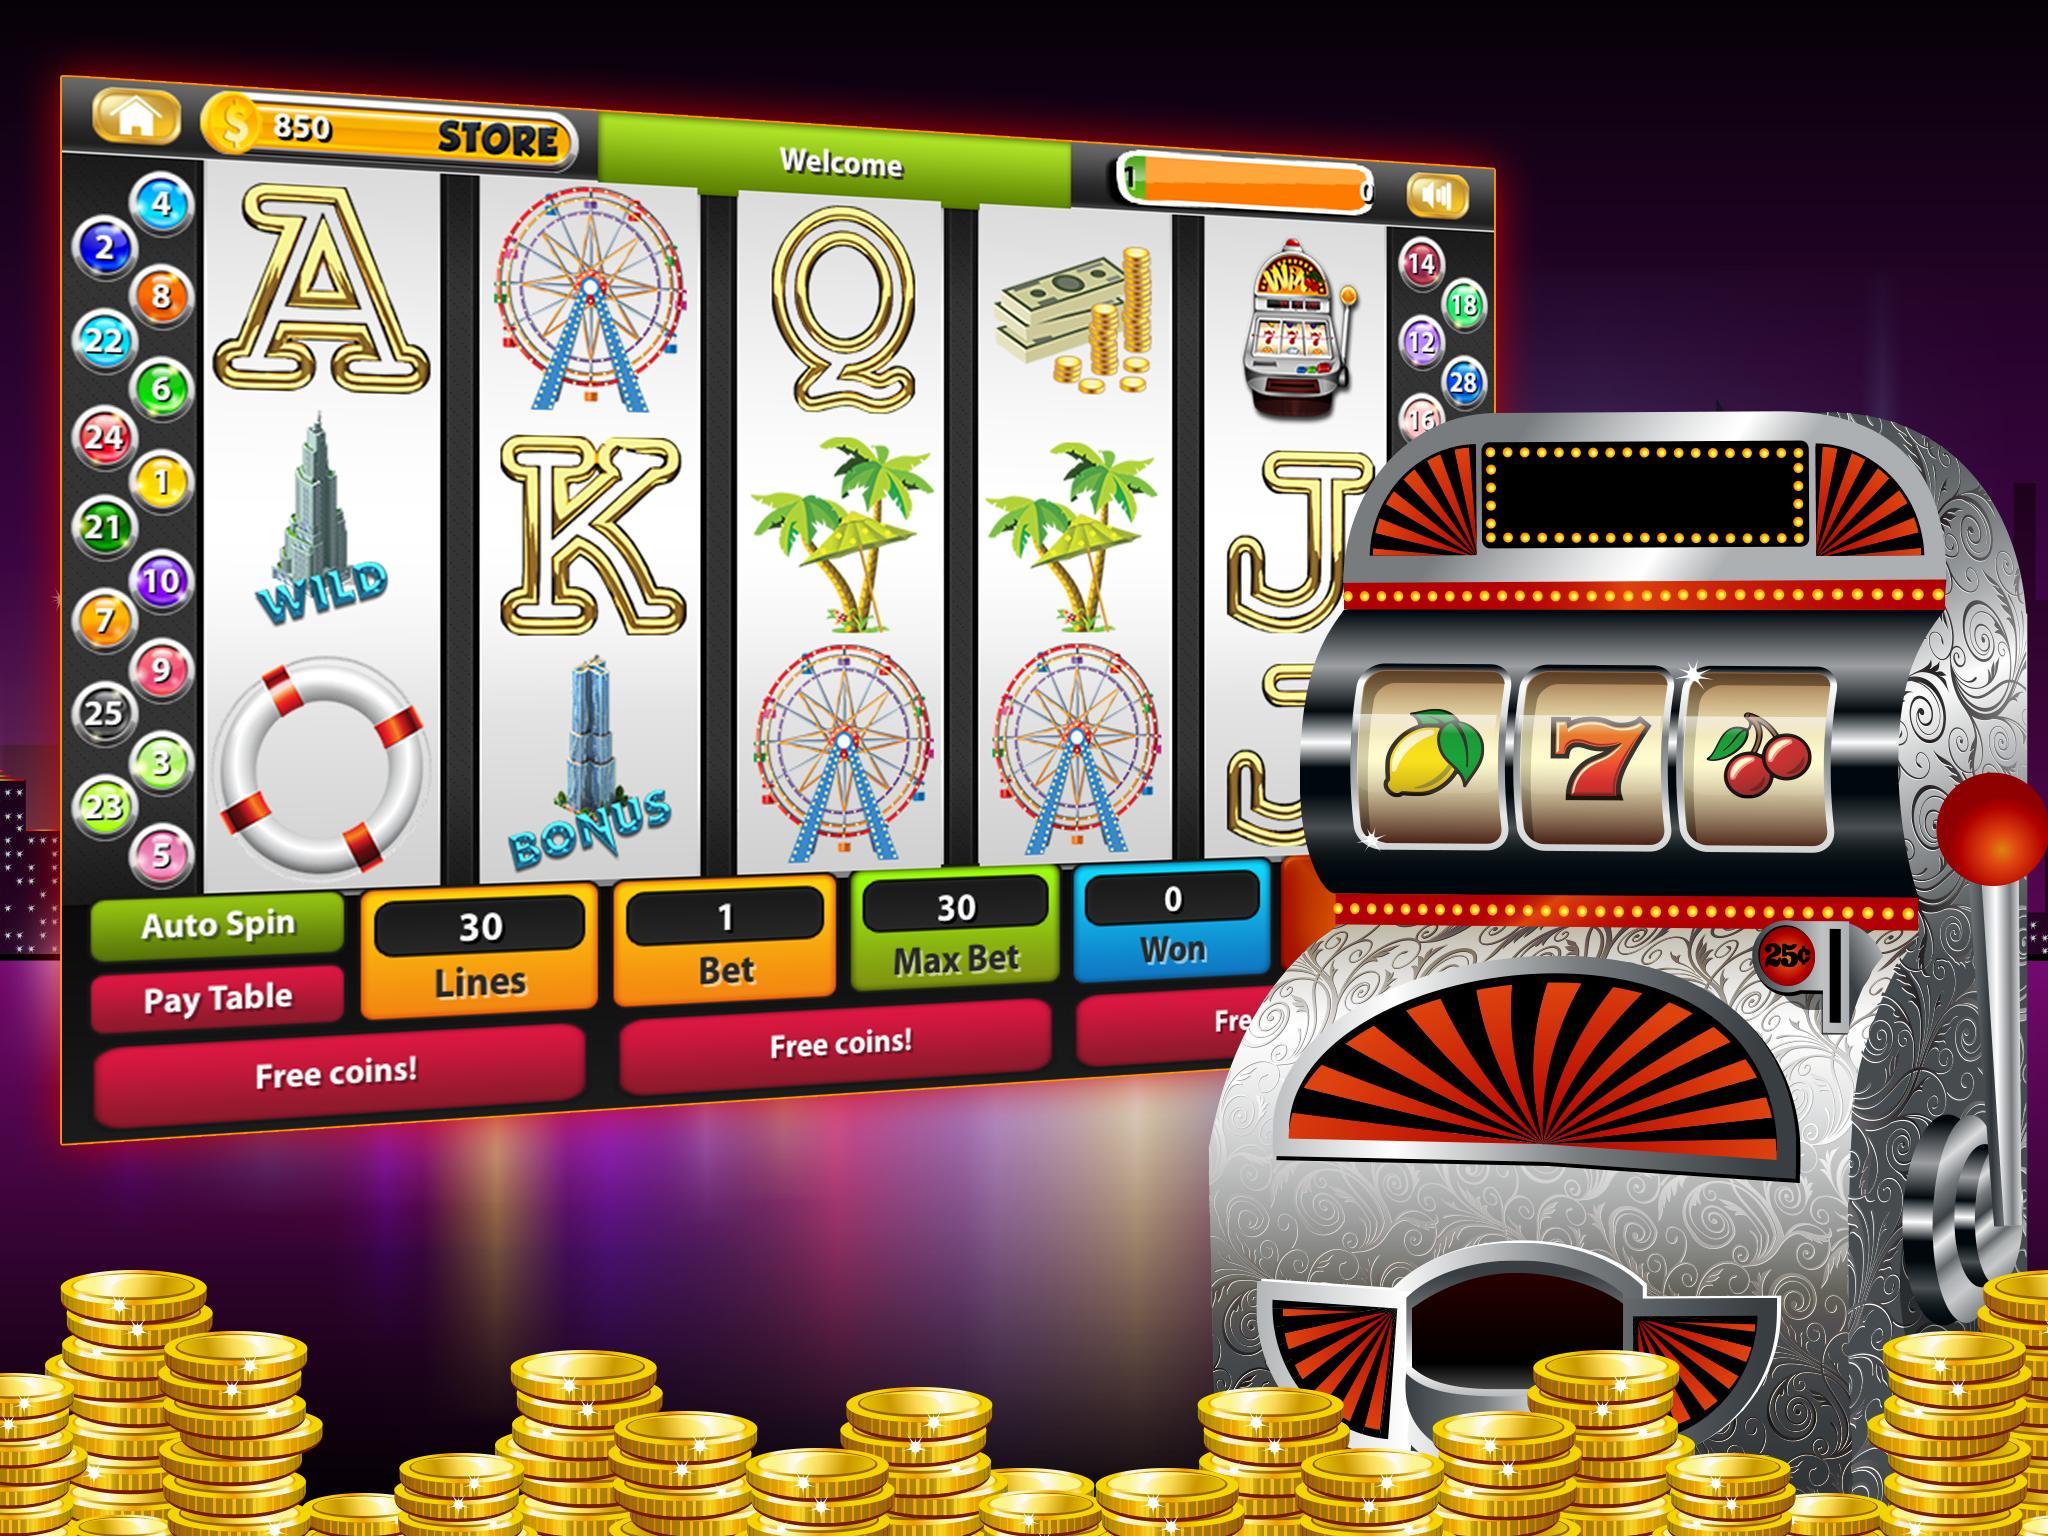 Онлайн казино с выводом денег на карту: как выбрать надежный бренд?